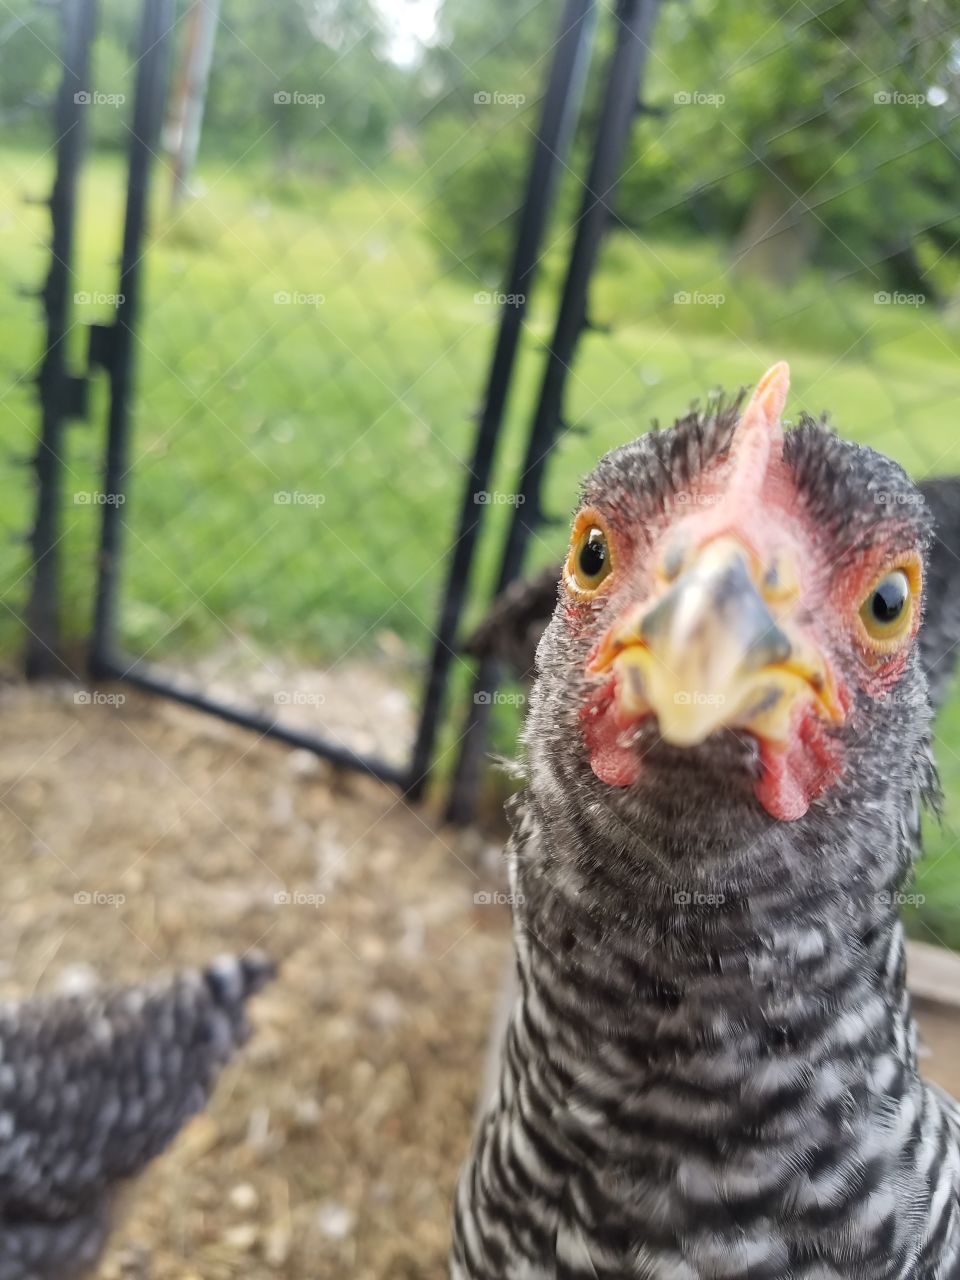 chicken doing a selfie